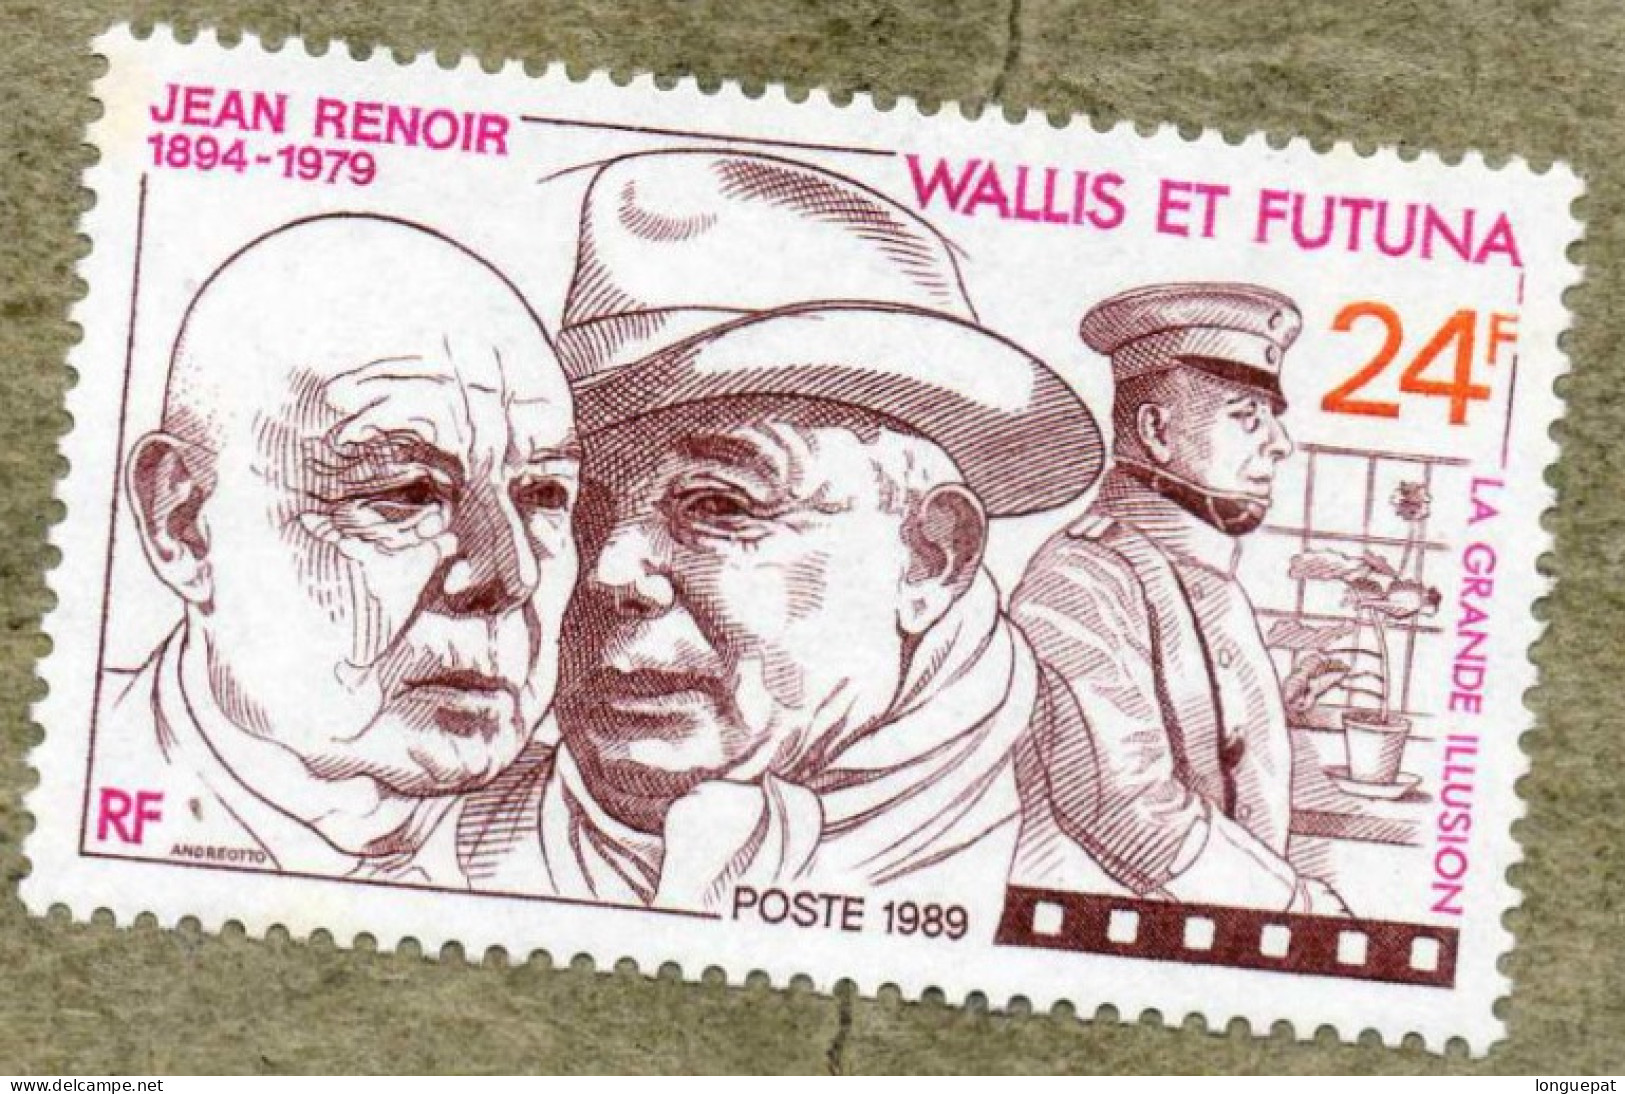 WALLIS Et FUTUNA  : Cinéma :Jean RENOIR, Cinéaste Français- Portraits De Renoir Et Eric Von Stroheim - 10 Ans De Sa Mort - Unused Stamps